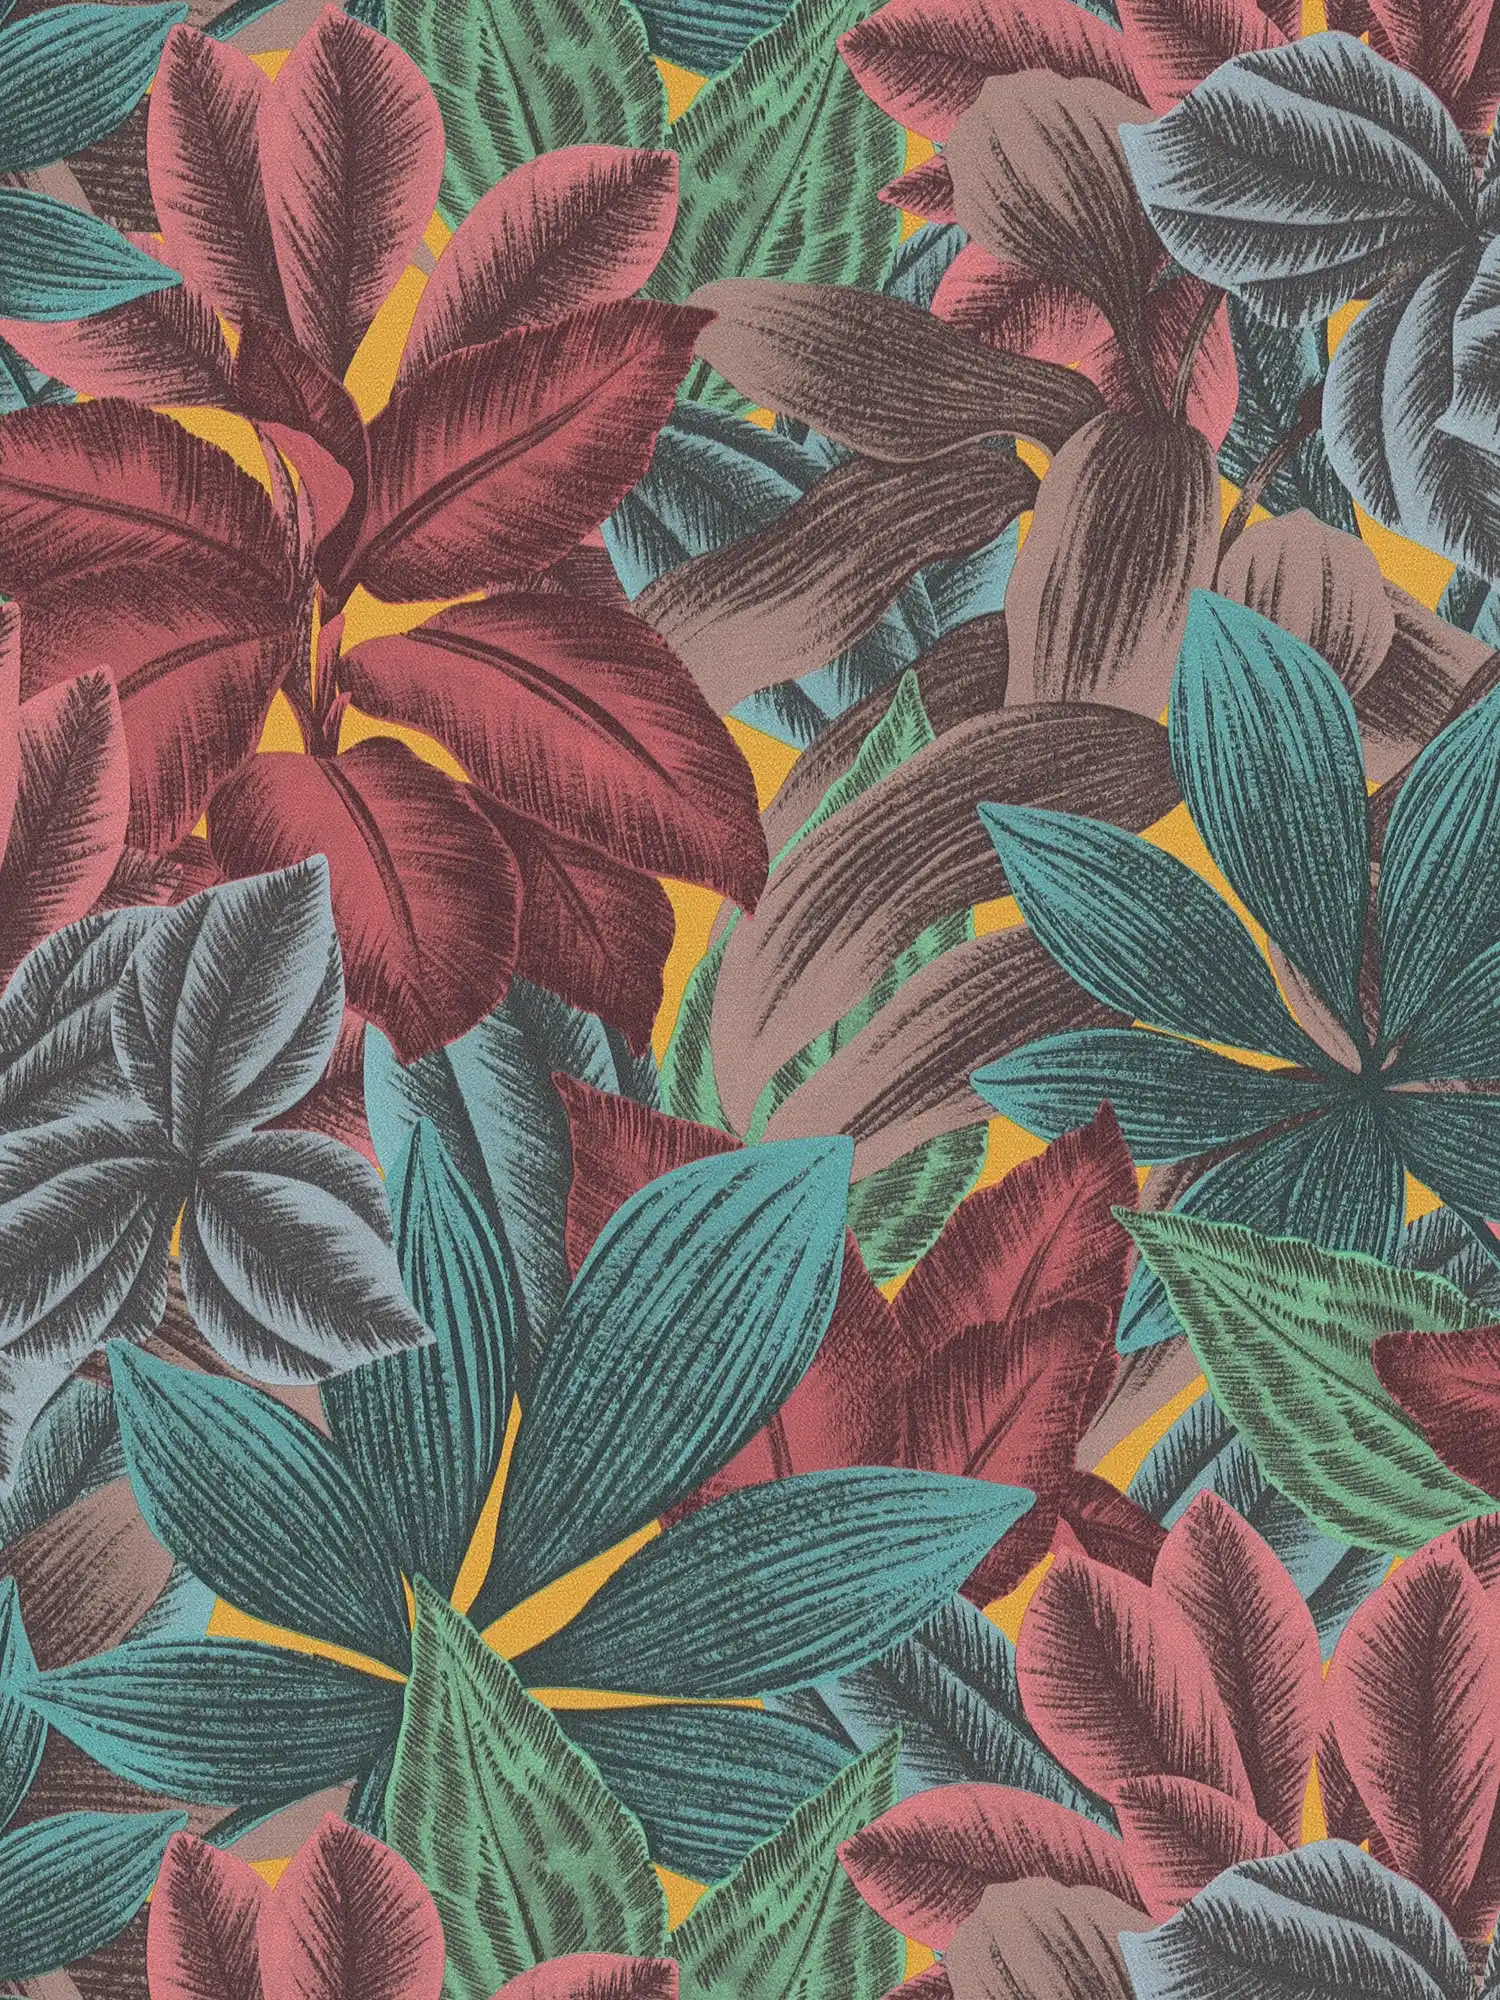 Vliestapete mit Blättermuster in bunten Farben – Bunt, Blau, Rosa
